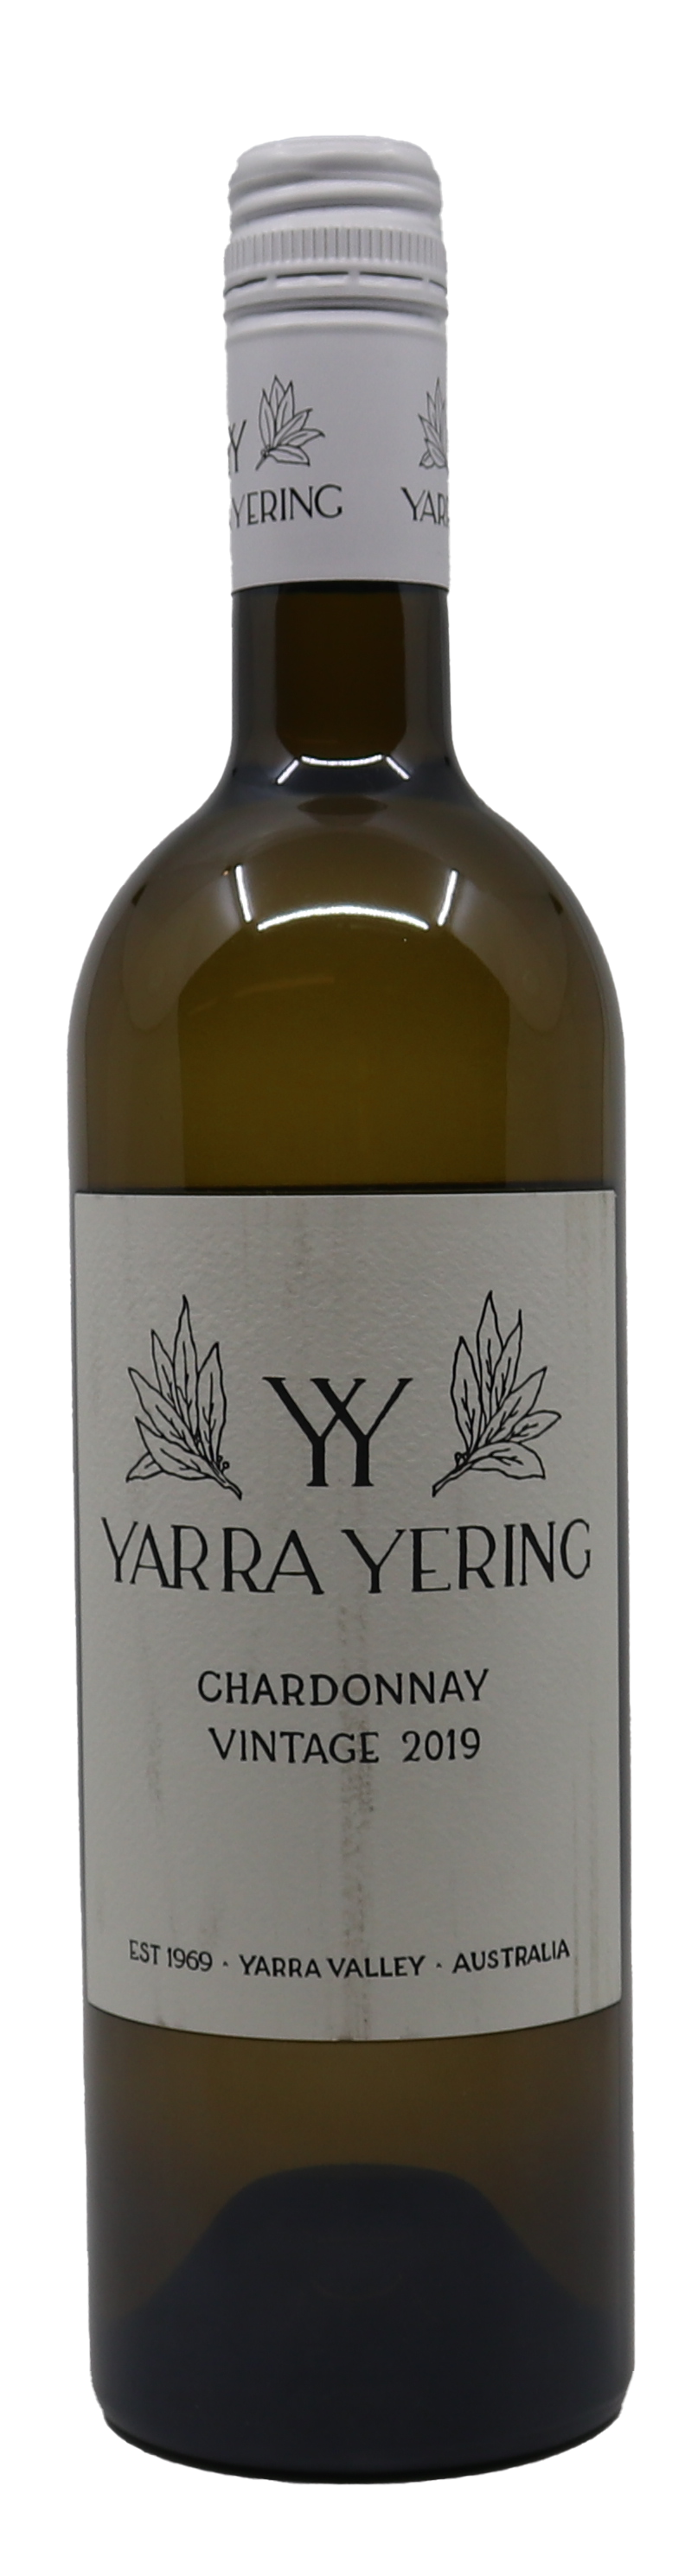 Yarra Yering Chardonnay 2019